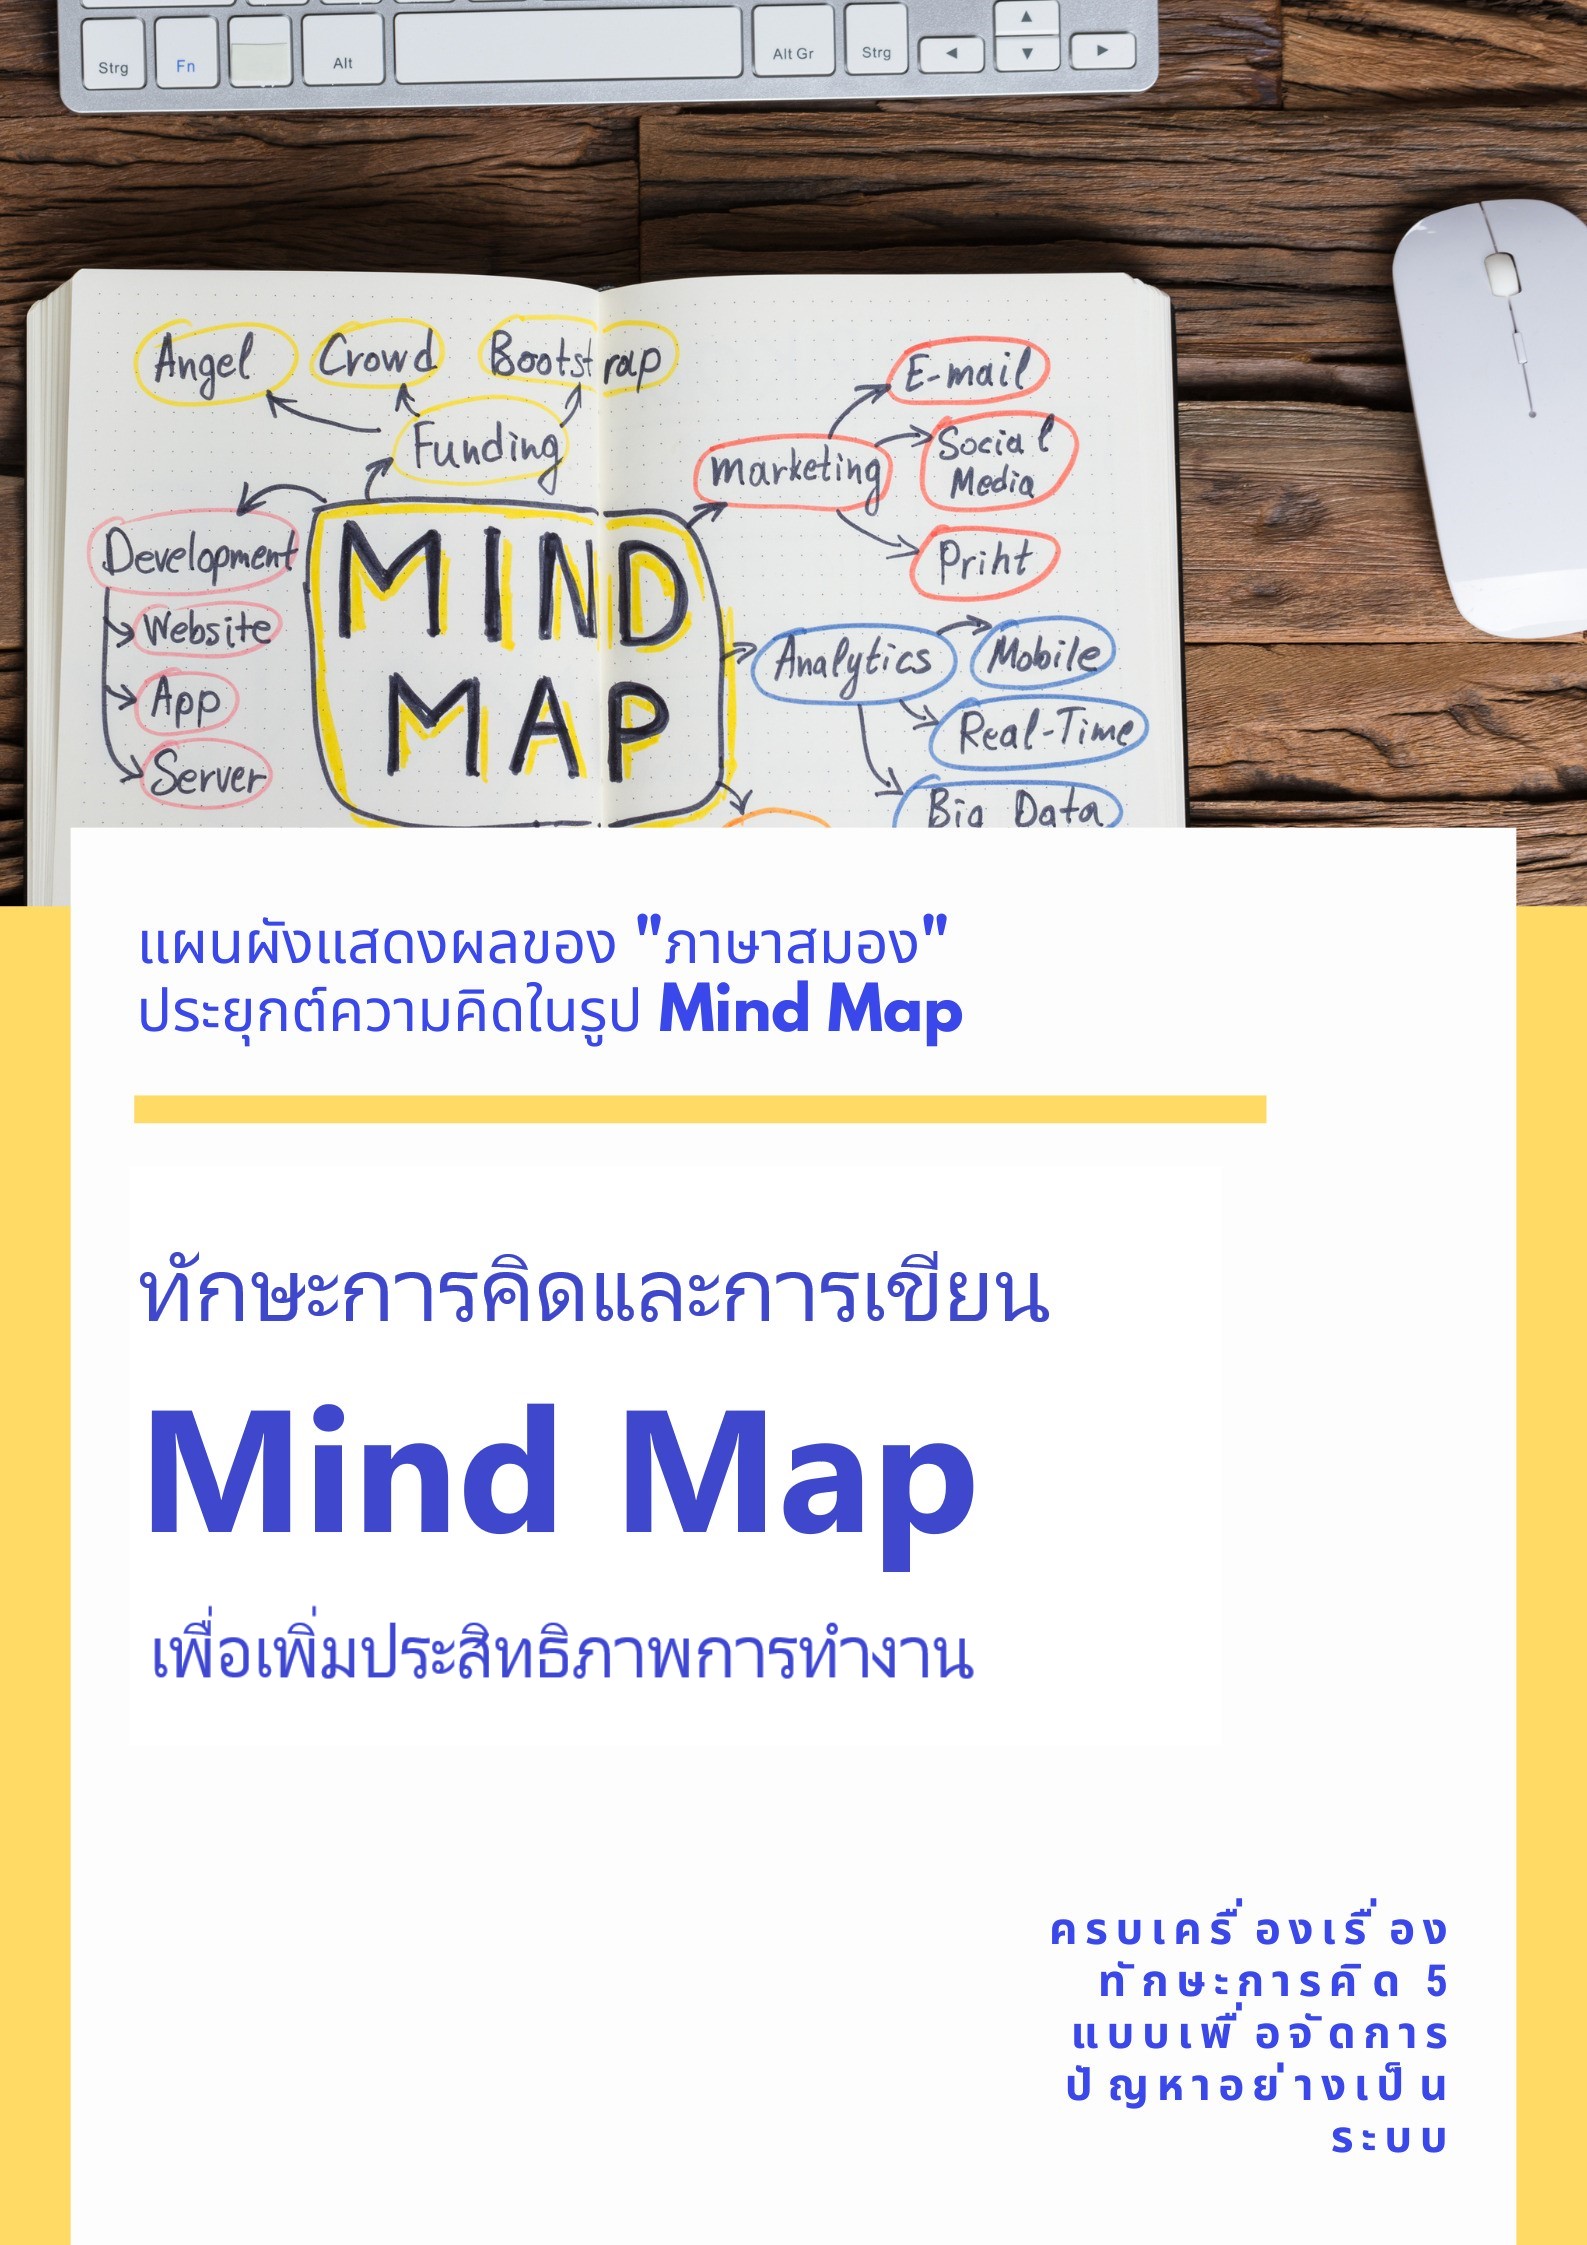 หลักสูตร ทักษะการคิดและการเขียน Mind Map เพื่อเพิ่มประสิทธิภาพการทำงาน